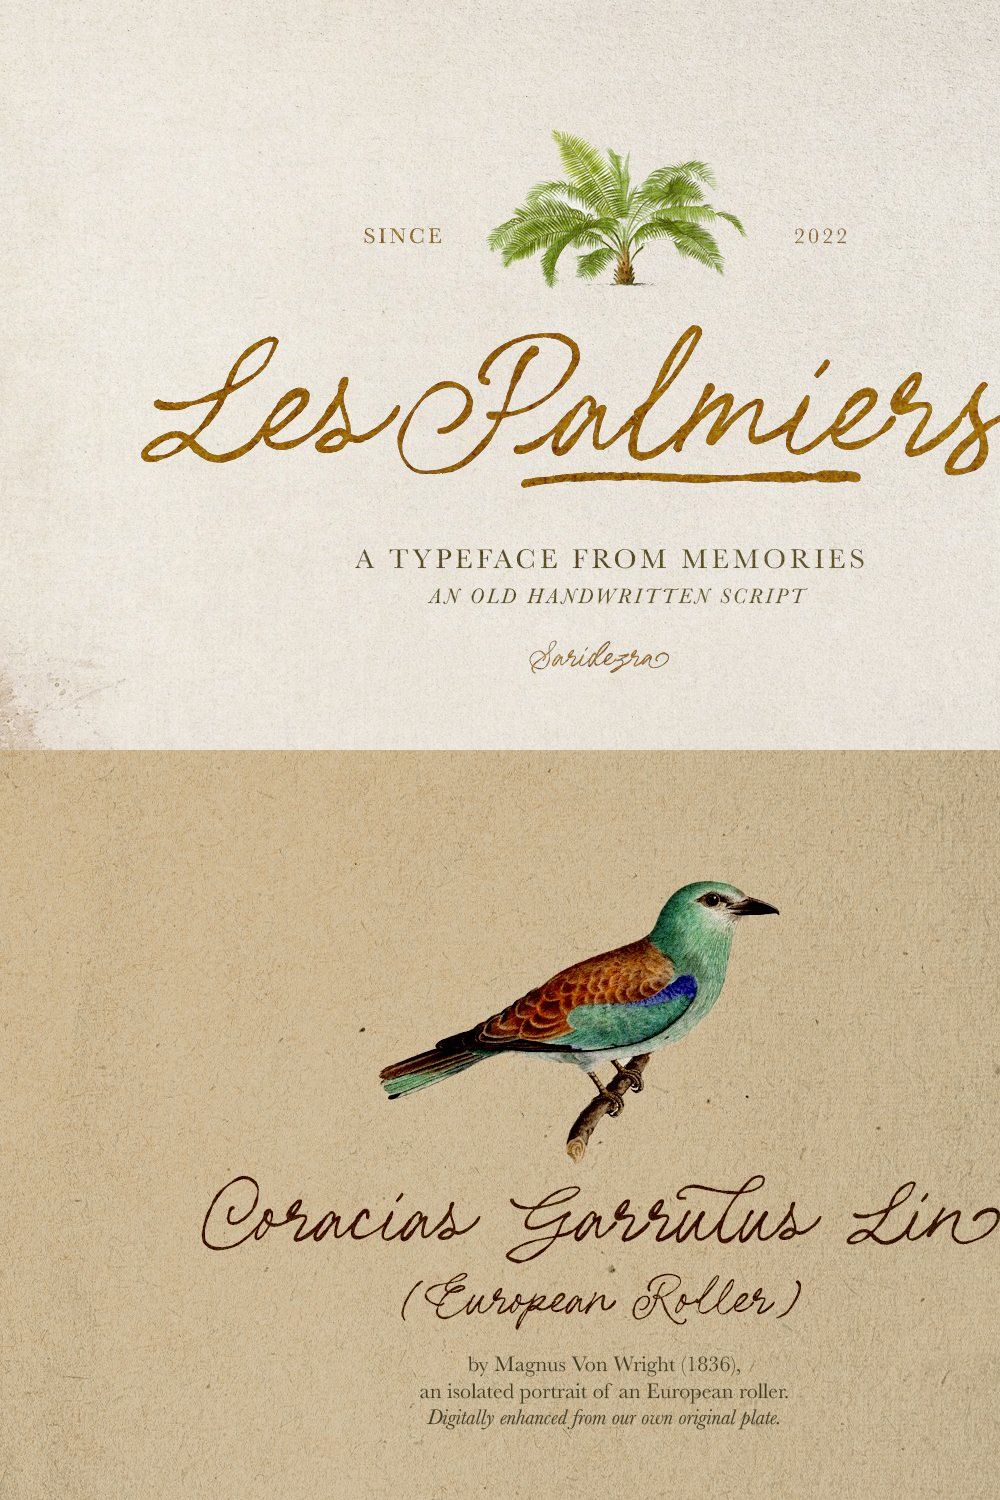 Les Palmiers - Handwritten Script pinterest preview image.